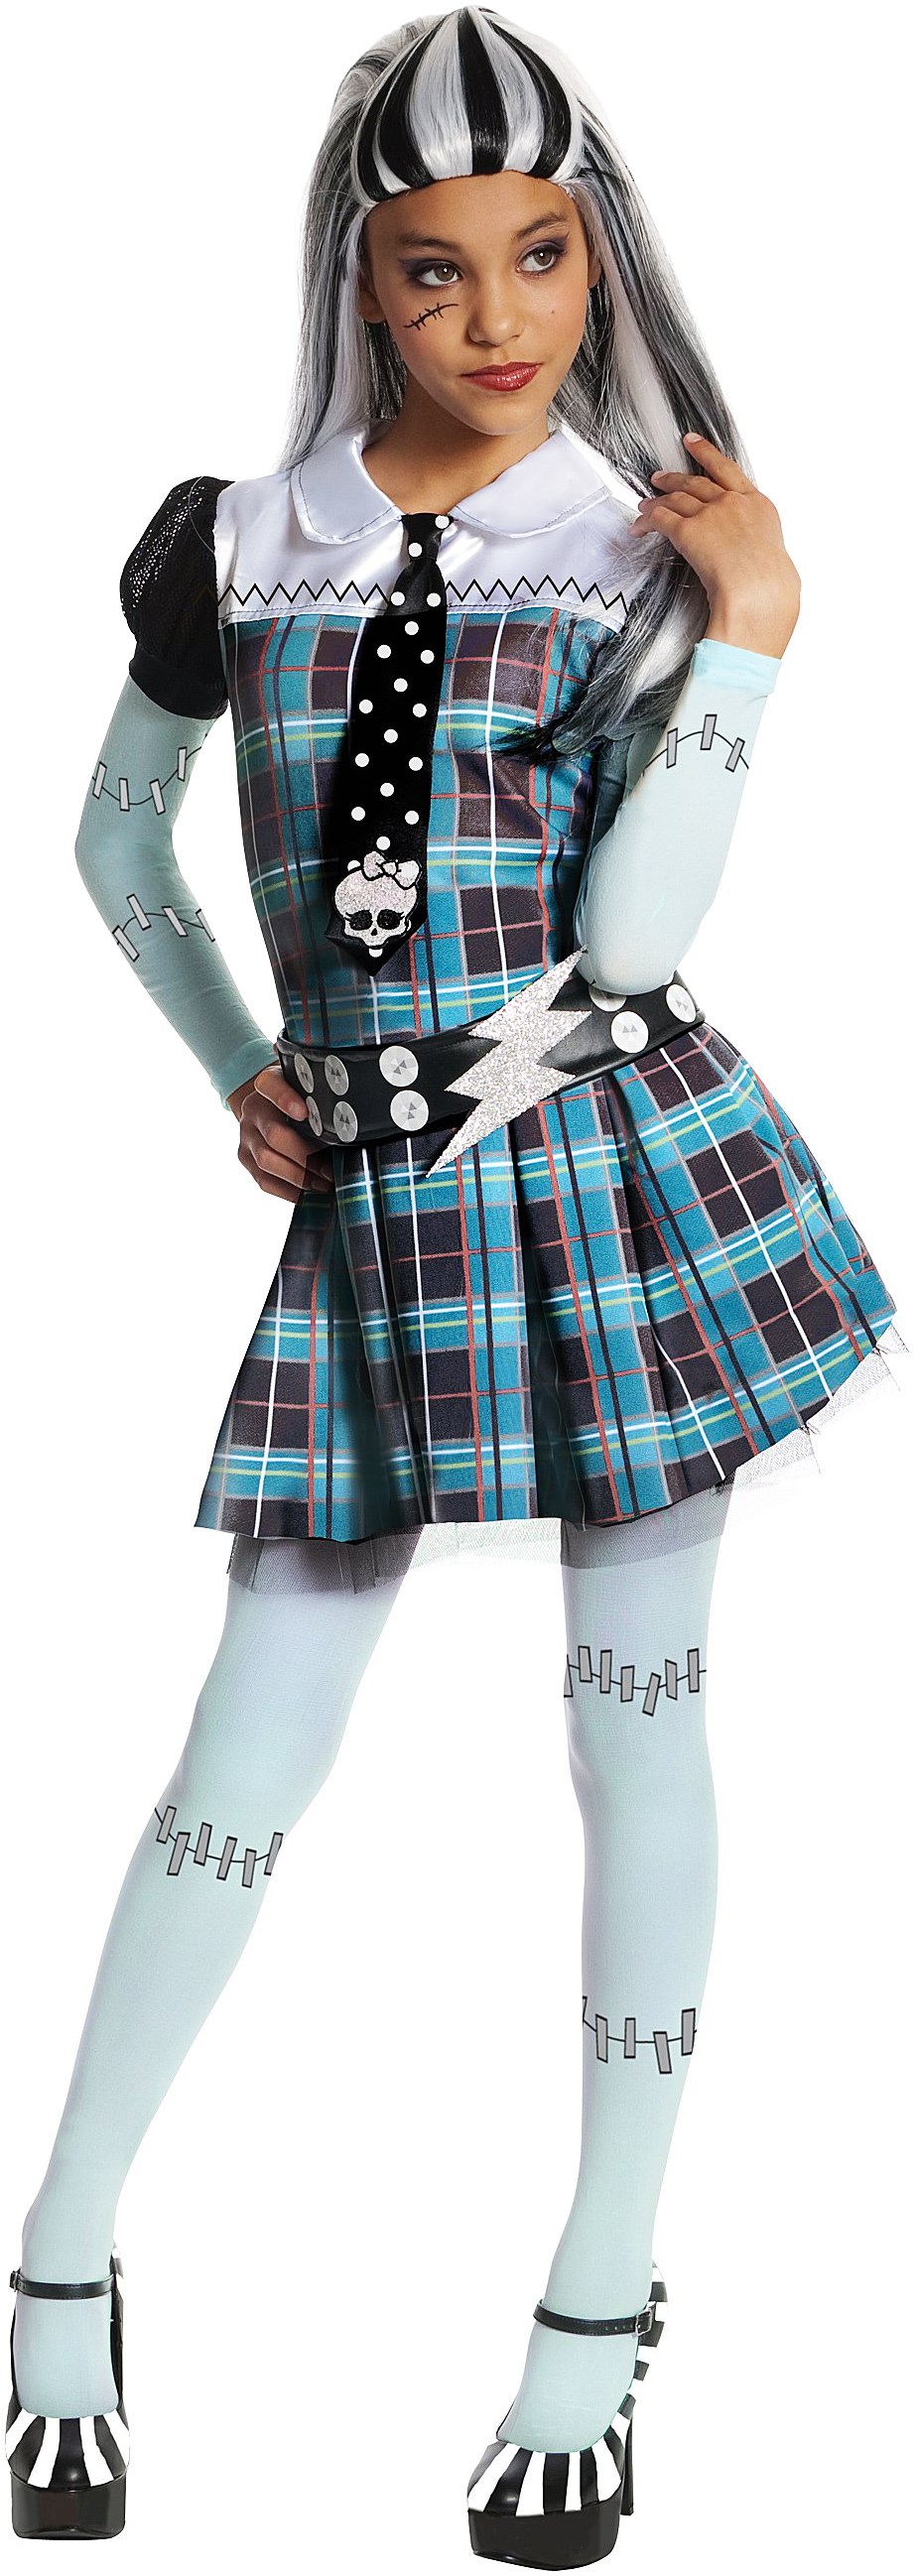 Monster High - Frankie Stein Child Costume